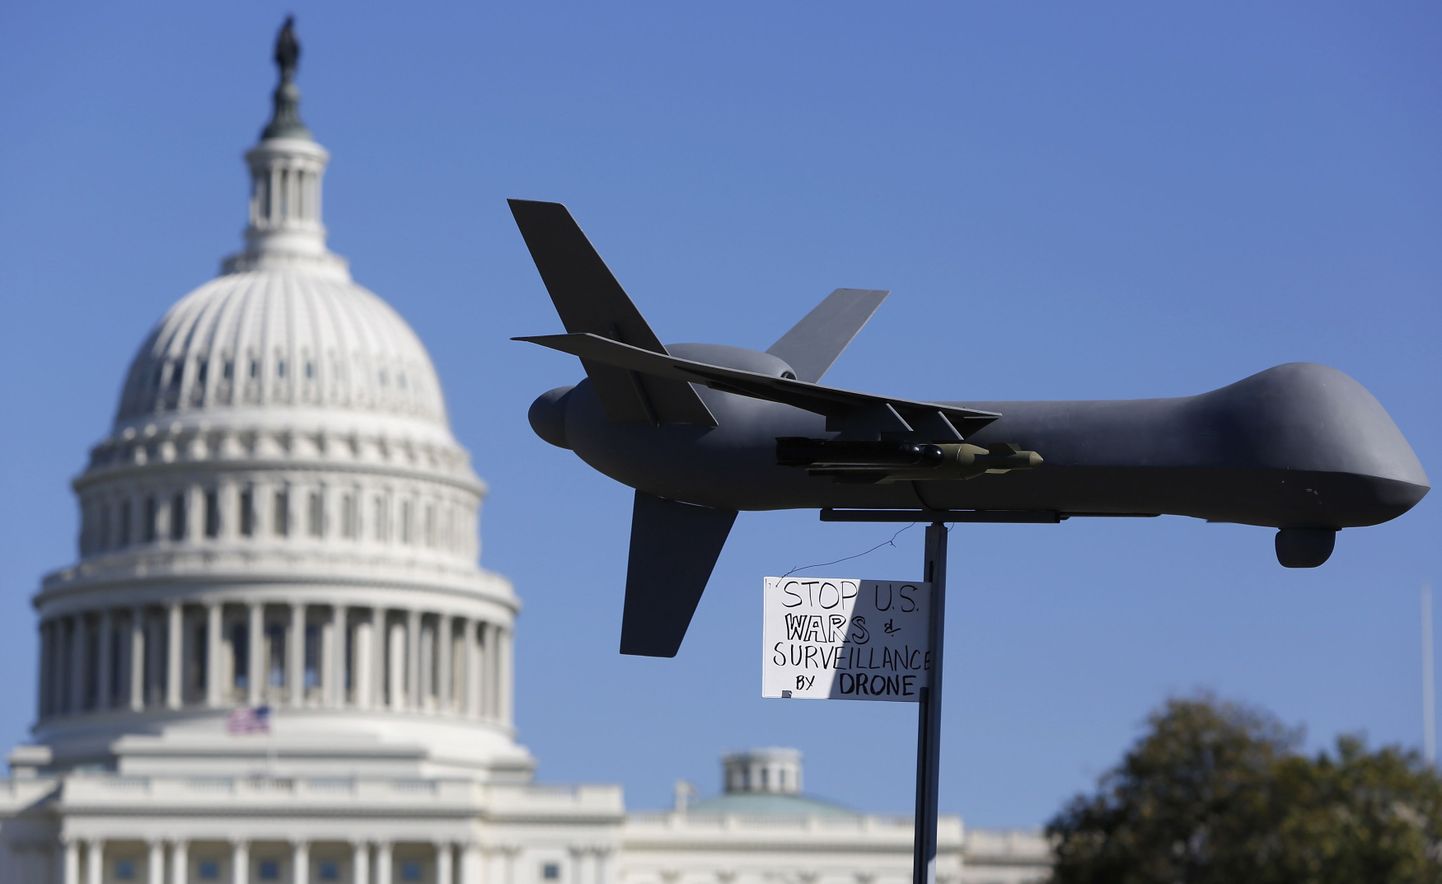 USA drooni mudel toodi välja ka oktoobris Washingtonis toimunud luureteenistuste aktiivsuse vastu protestinute meeleavaldusel.